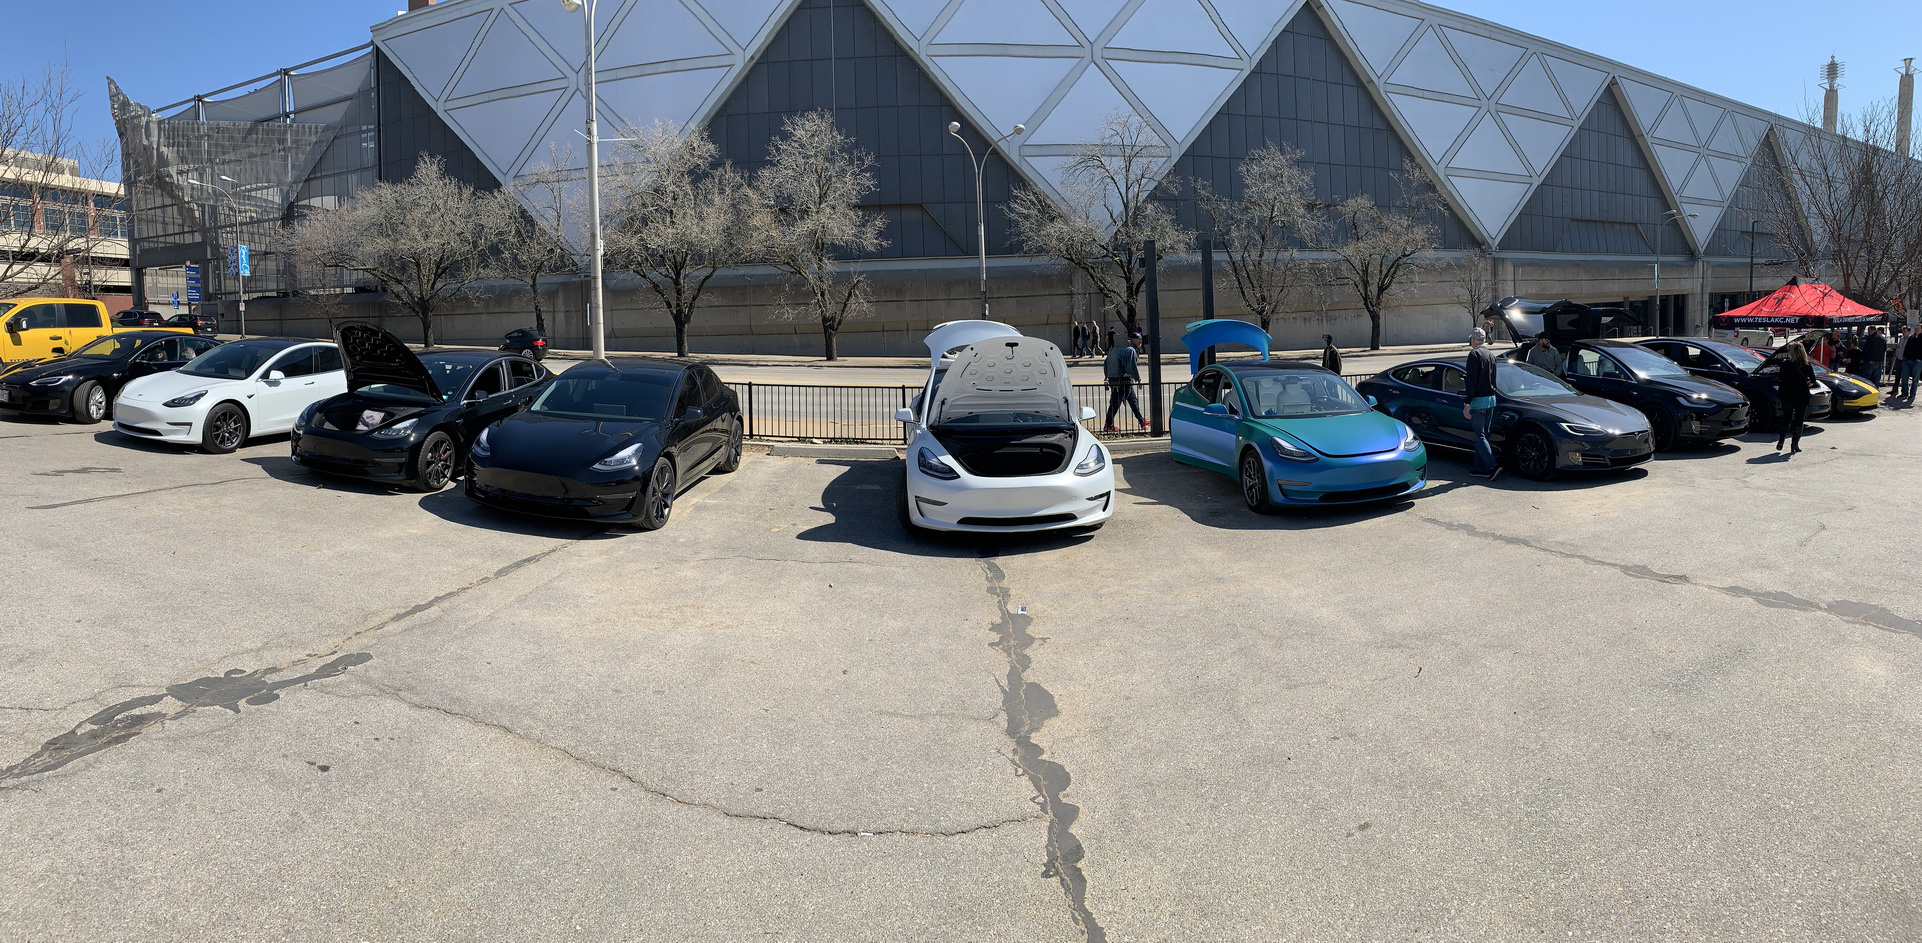 Triển lãm xe hiếm hoi tổ chức mùa Covid-19 nhưng cấm Tesla, fan cuồng tự làm gian trưng bày ngay ngoài sự kiện - Ảnh 1.